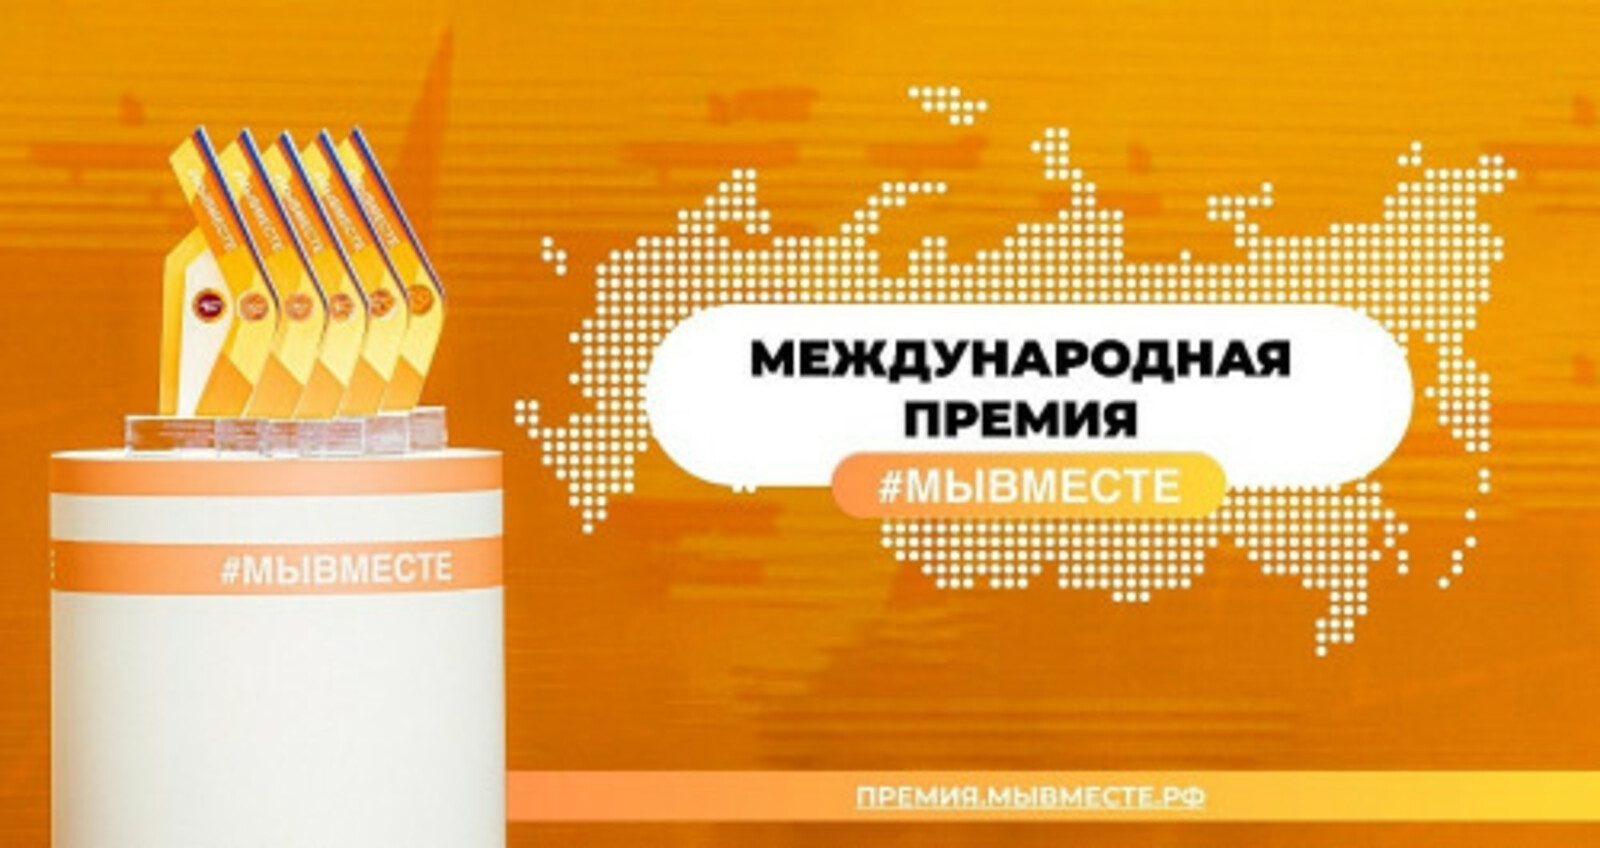 Представители бизнес-сообщества Башкортостана могут участвовать в Международной премии #МЫВМЕСТЕ